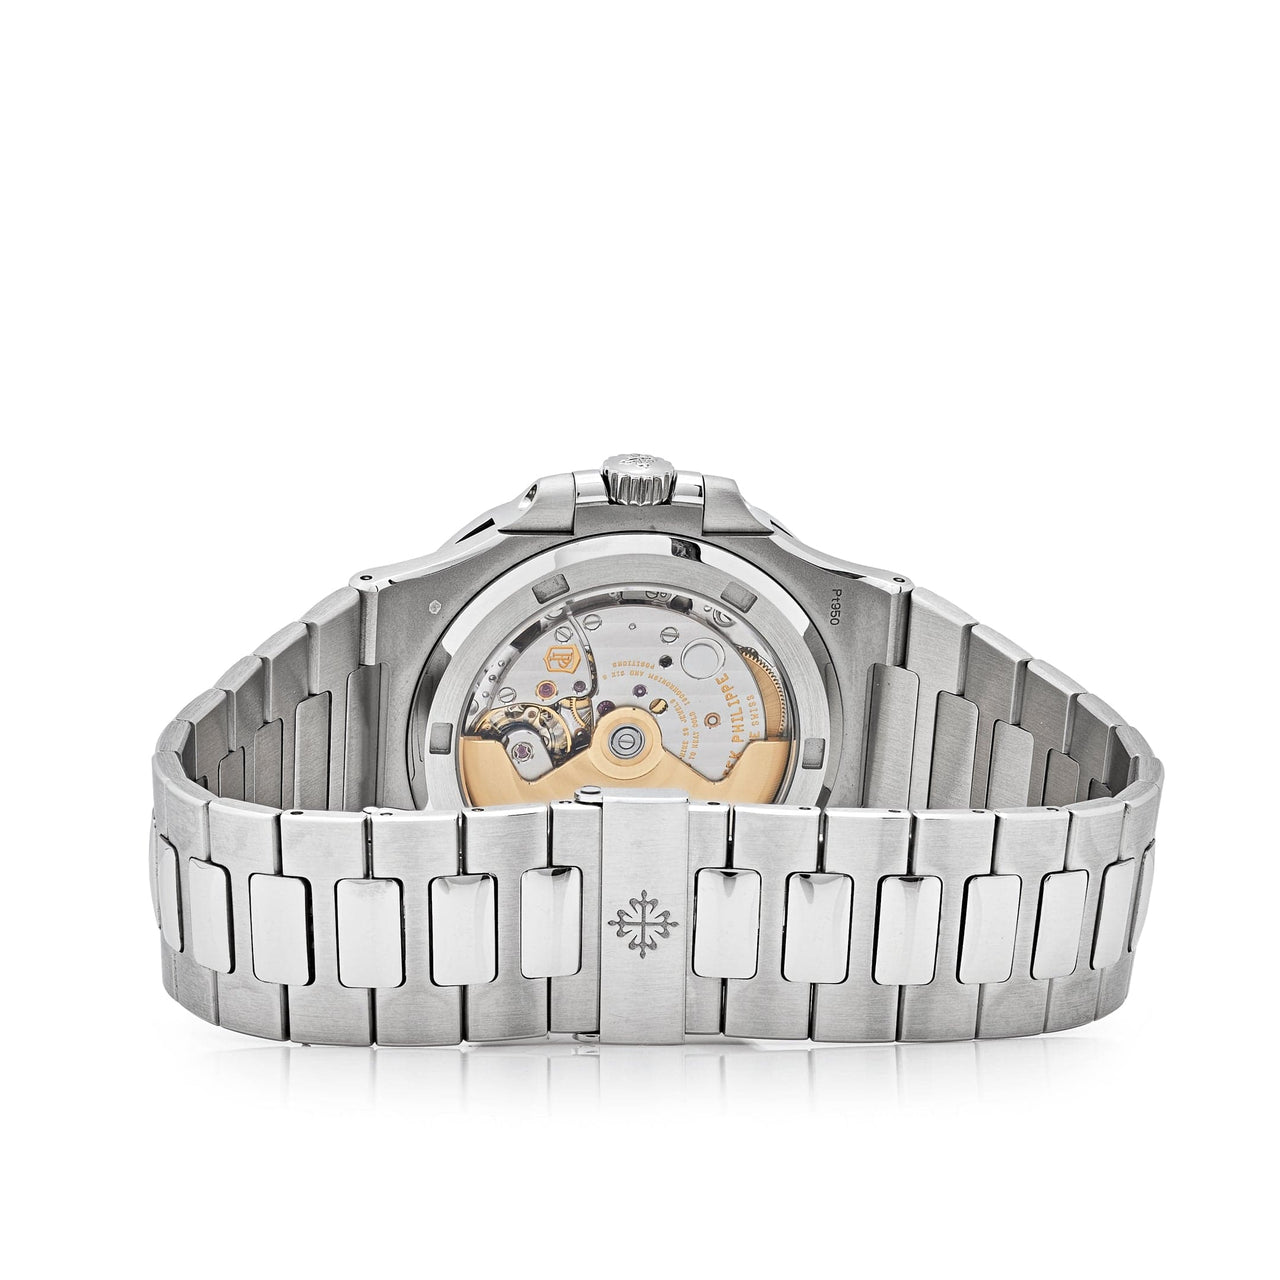 Patek Philippe Nautilus Platinum Grey Dial Diamond Bezel 5711/110P-001 Wrist Aficionado